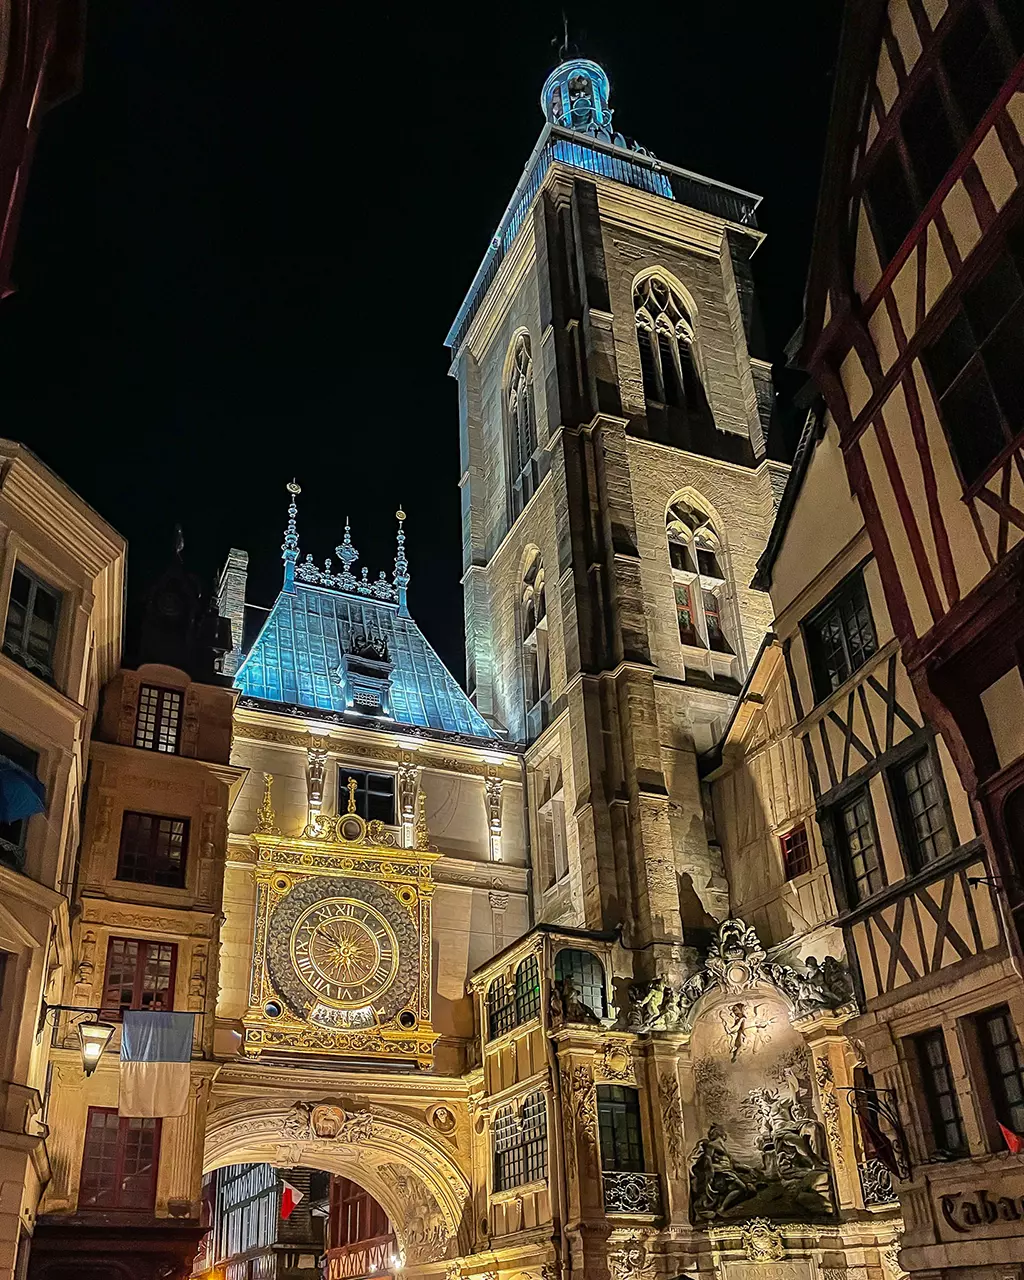 Visiter Rouen à pied en 2 jours : que voir et que faire ?